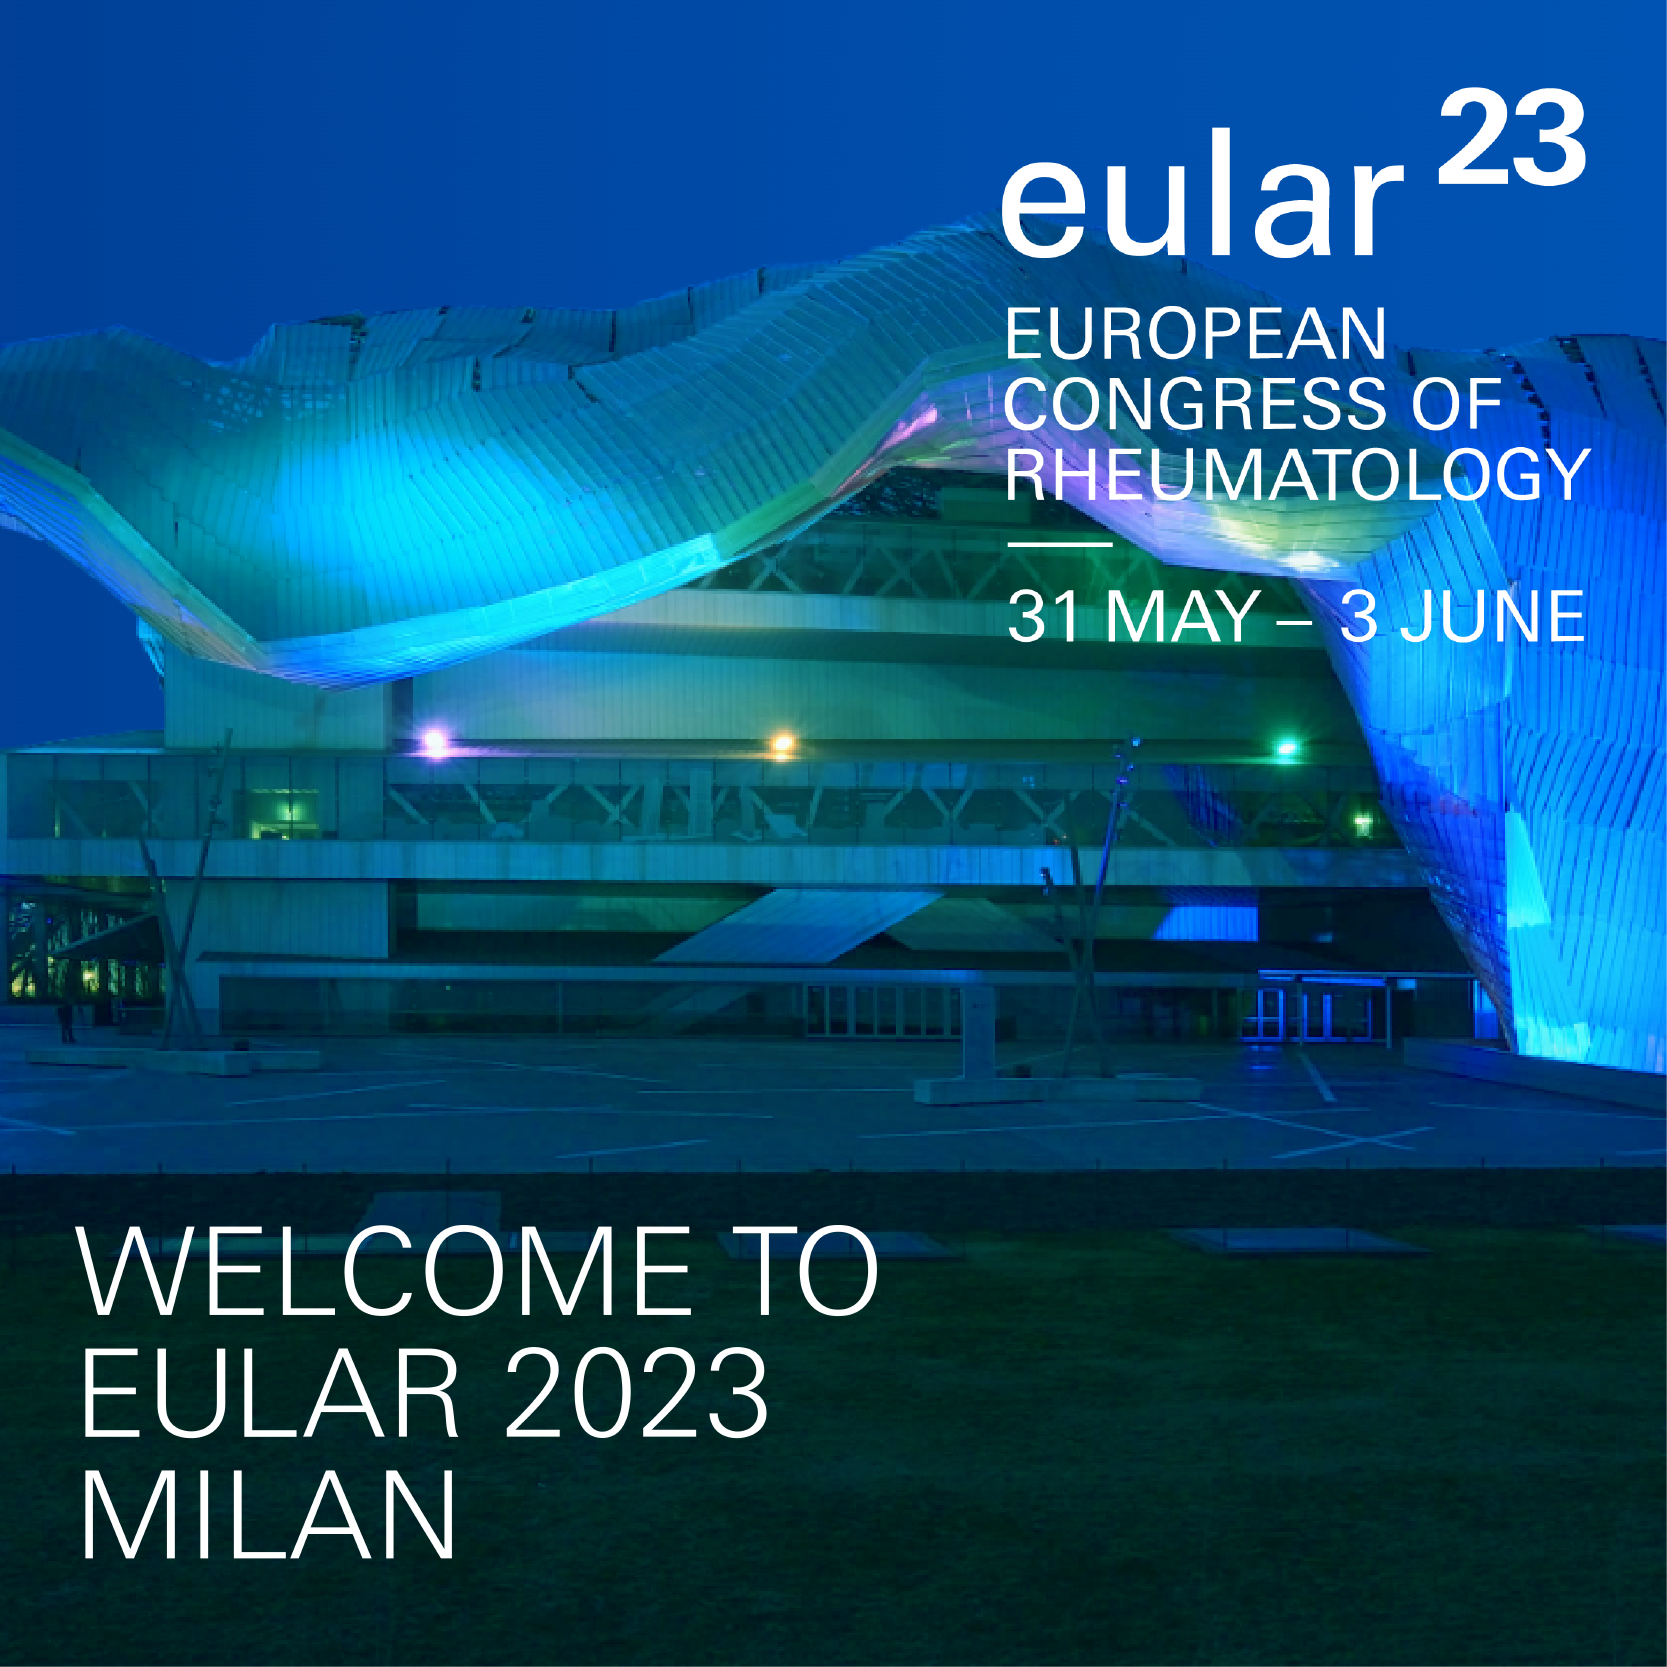 European Alliance of Associations for Rheumatology Congress - EULAR 2023